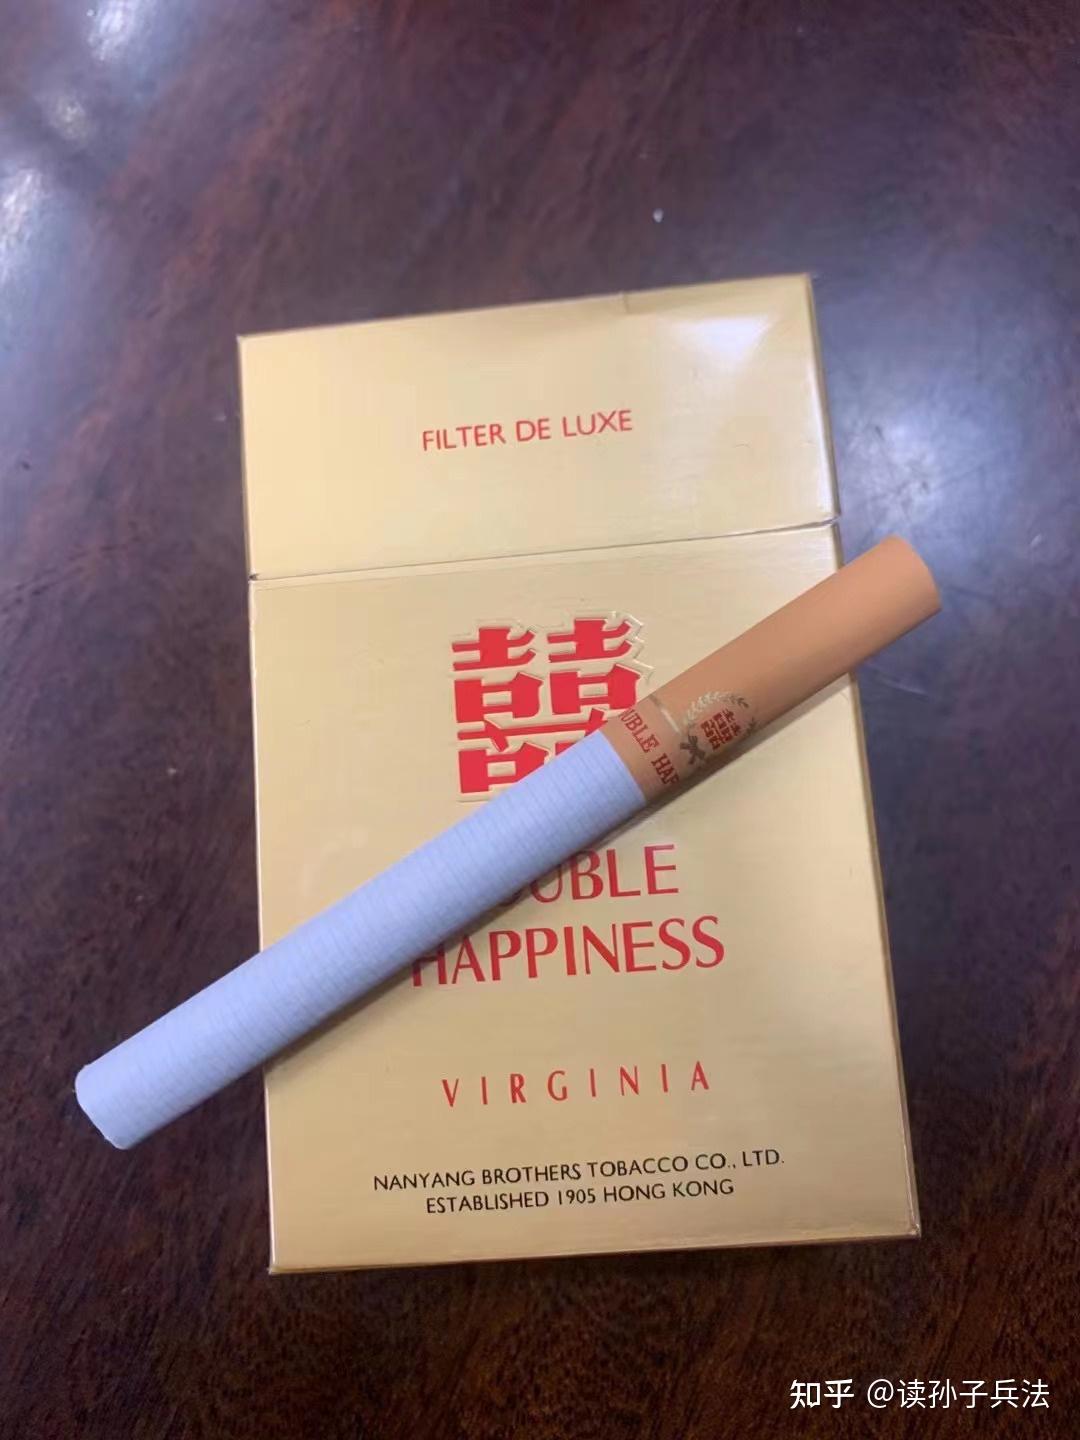 北京烟友小聚之澳门免税版硬红万 - 香烟漫谈 - 烟悦网论坛